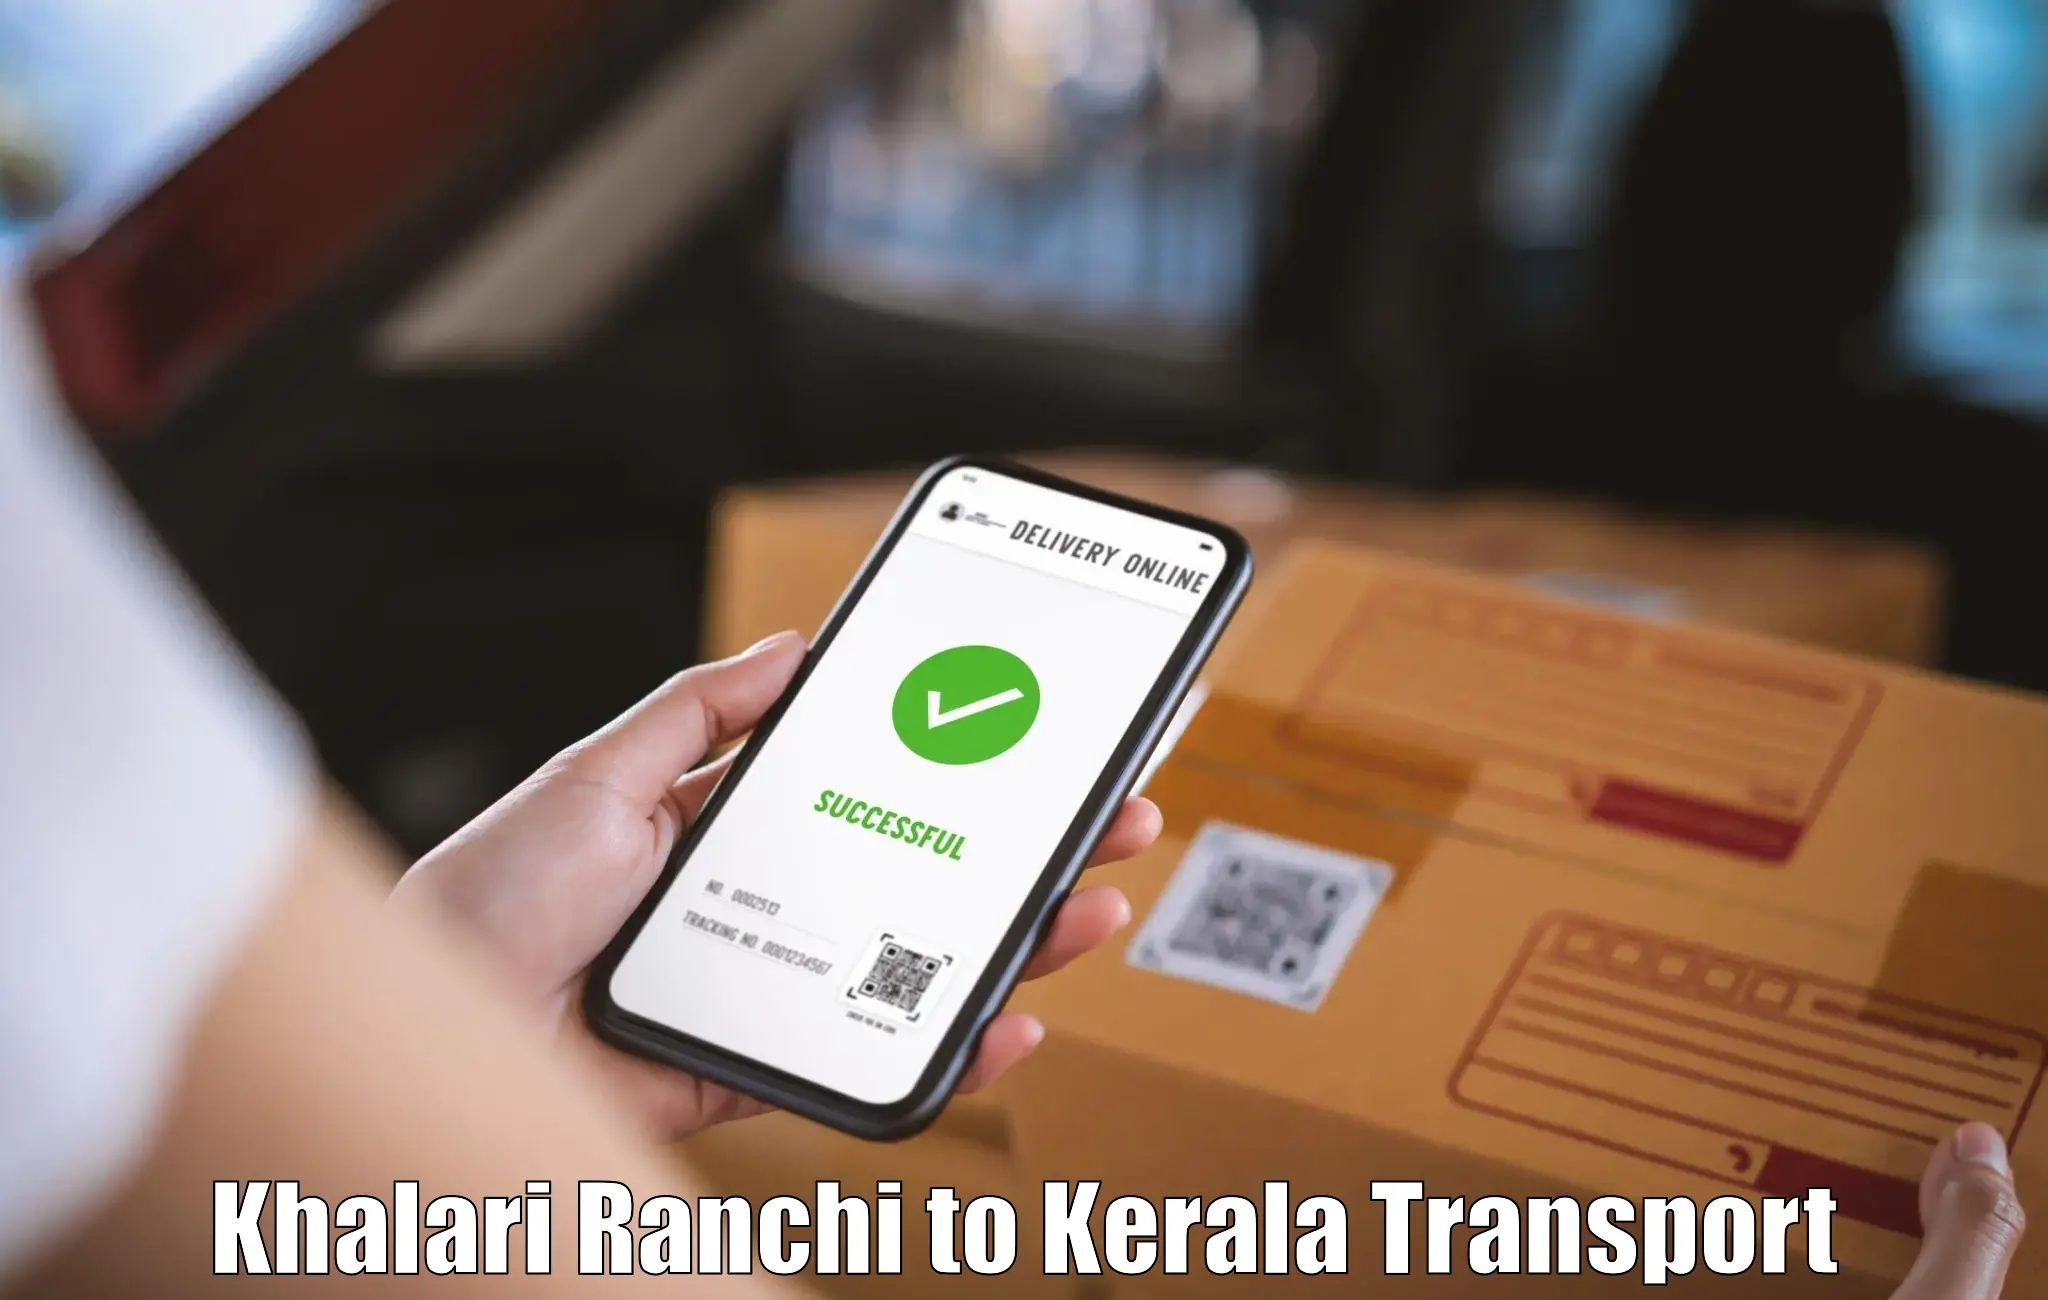 Pick up transport service Khalari Ranchi to Wayanad